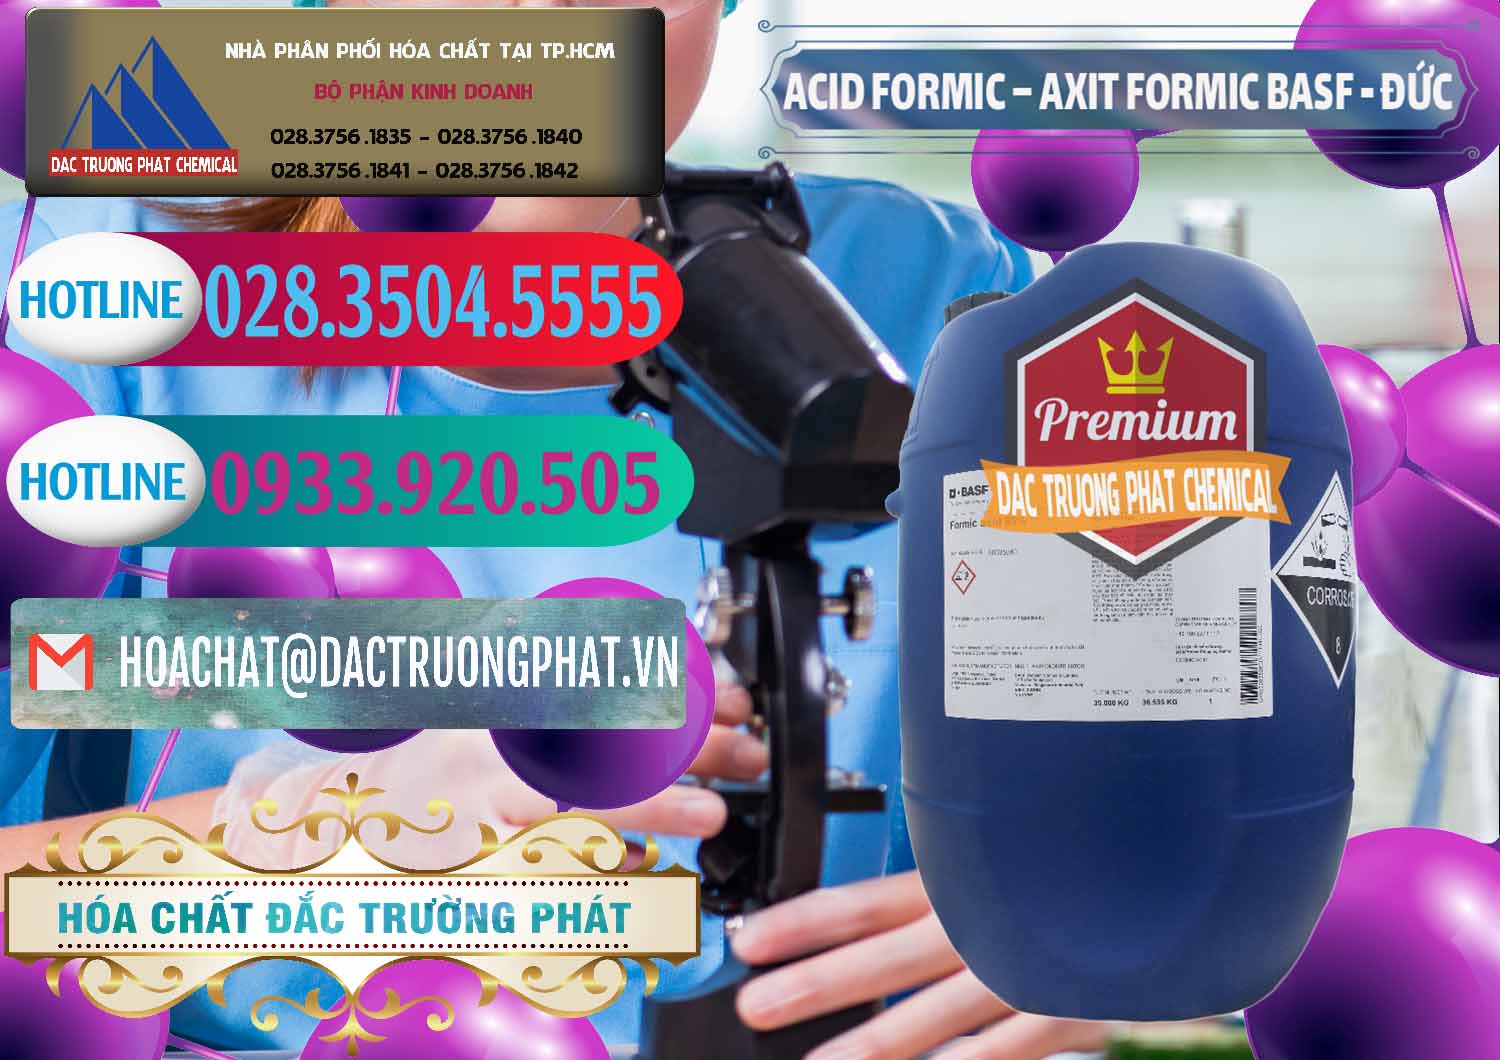 Cty nhập khẩu ( bán ) Acid Formic - Axit Formic BASF Đức Germany - 0028 - Nhà cung cấp & phân phối hóa chất tại TP.HCM - truongphat.vn